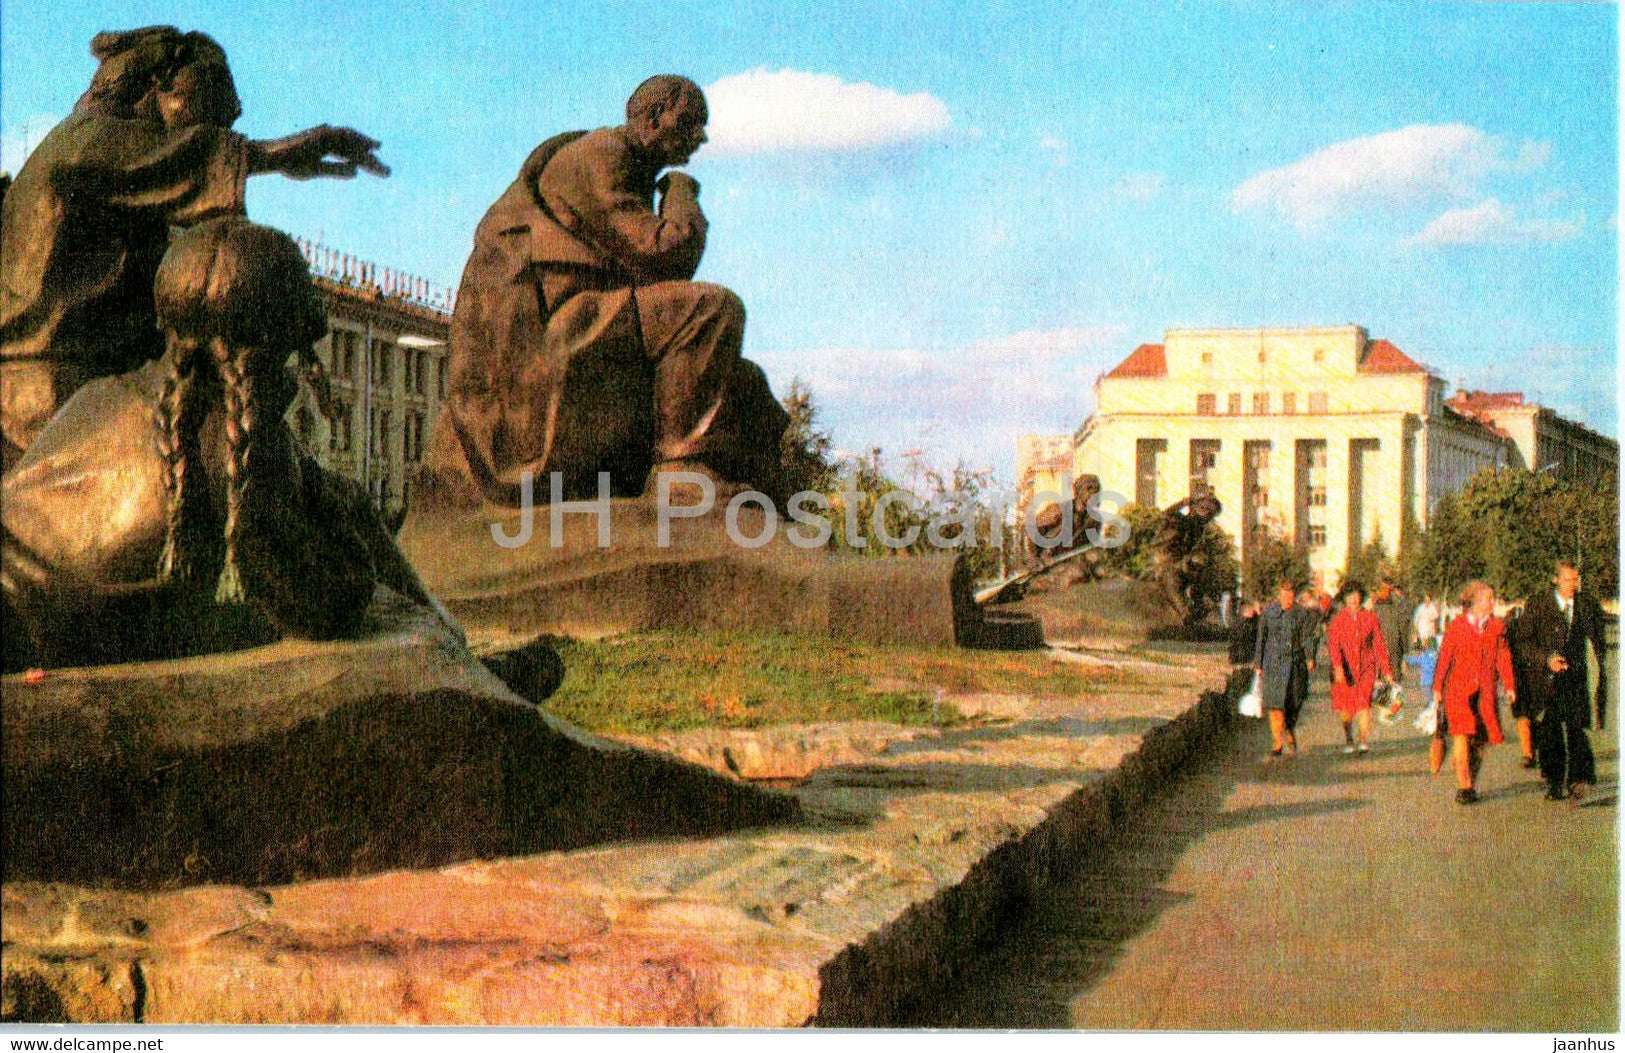 Minsk - monument to Belarus poet Yakub Kolas - 1977 - Belarus USSR - unused - JH Postcards